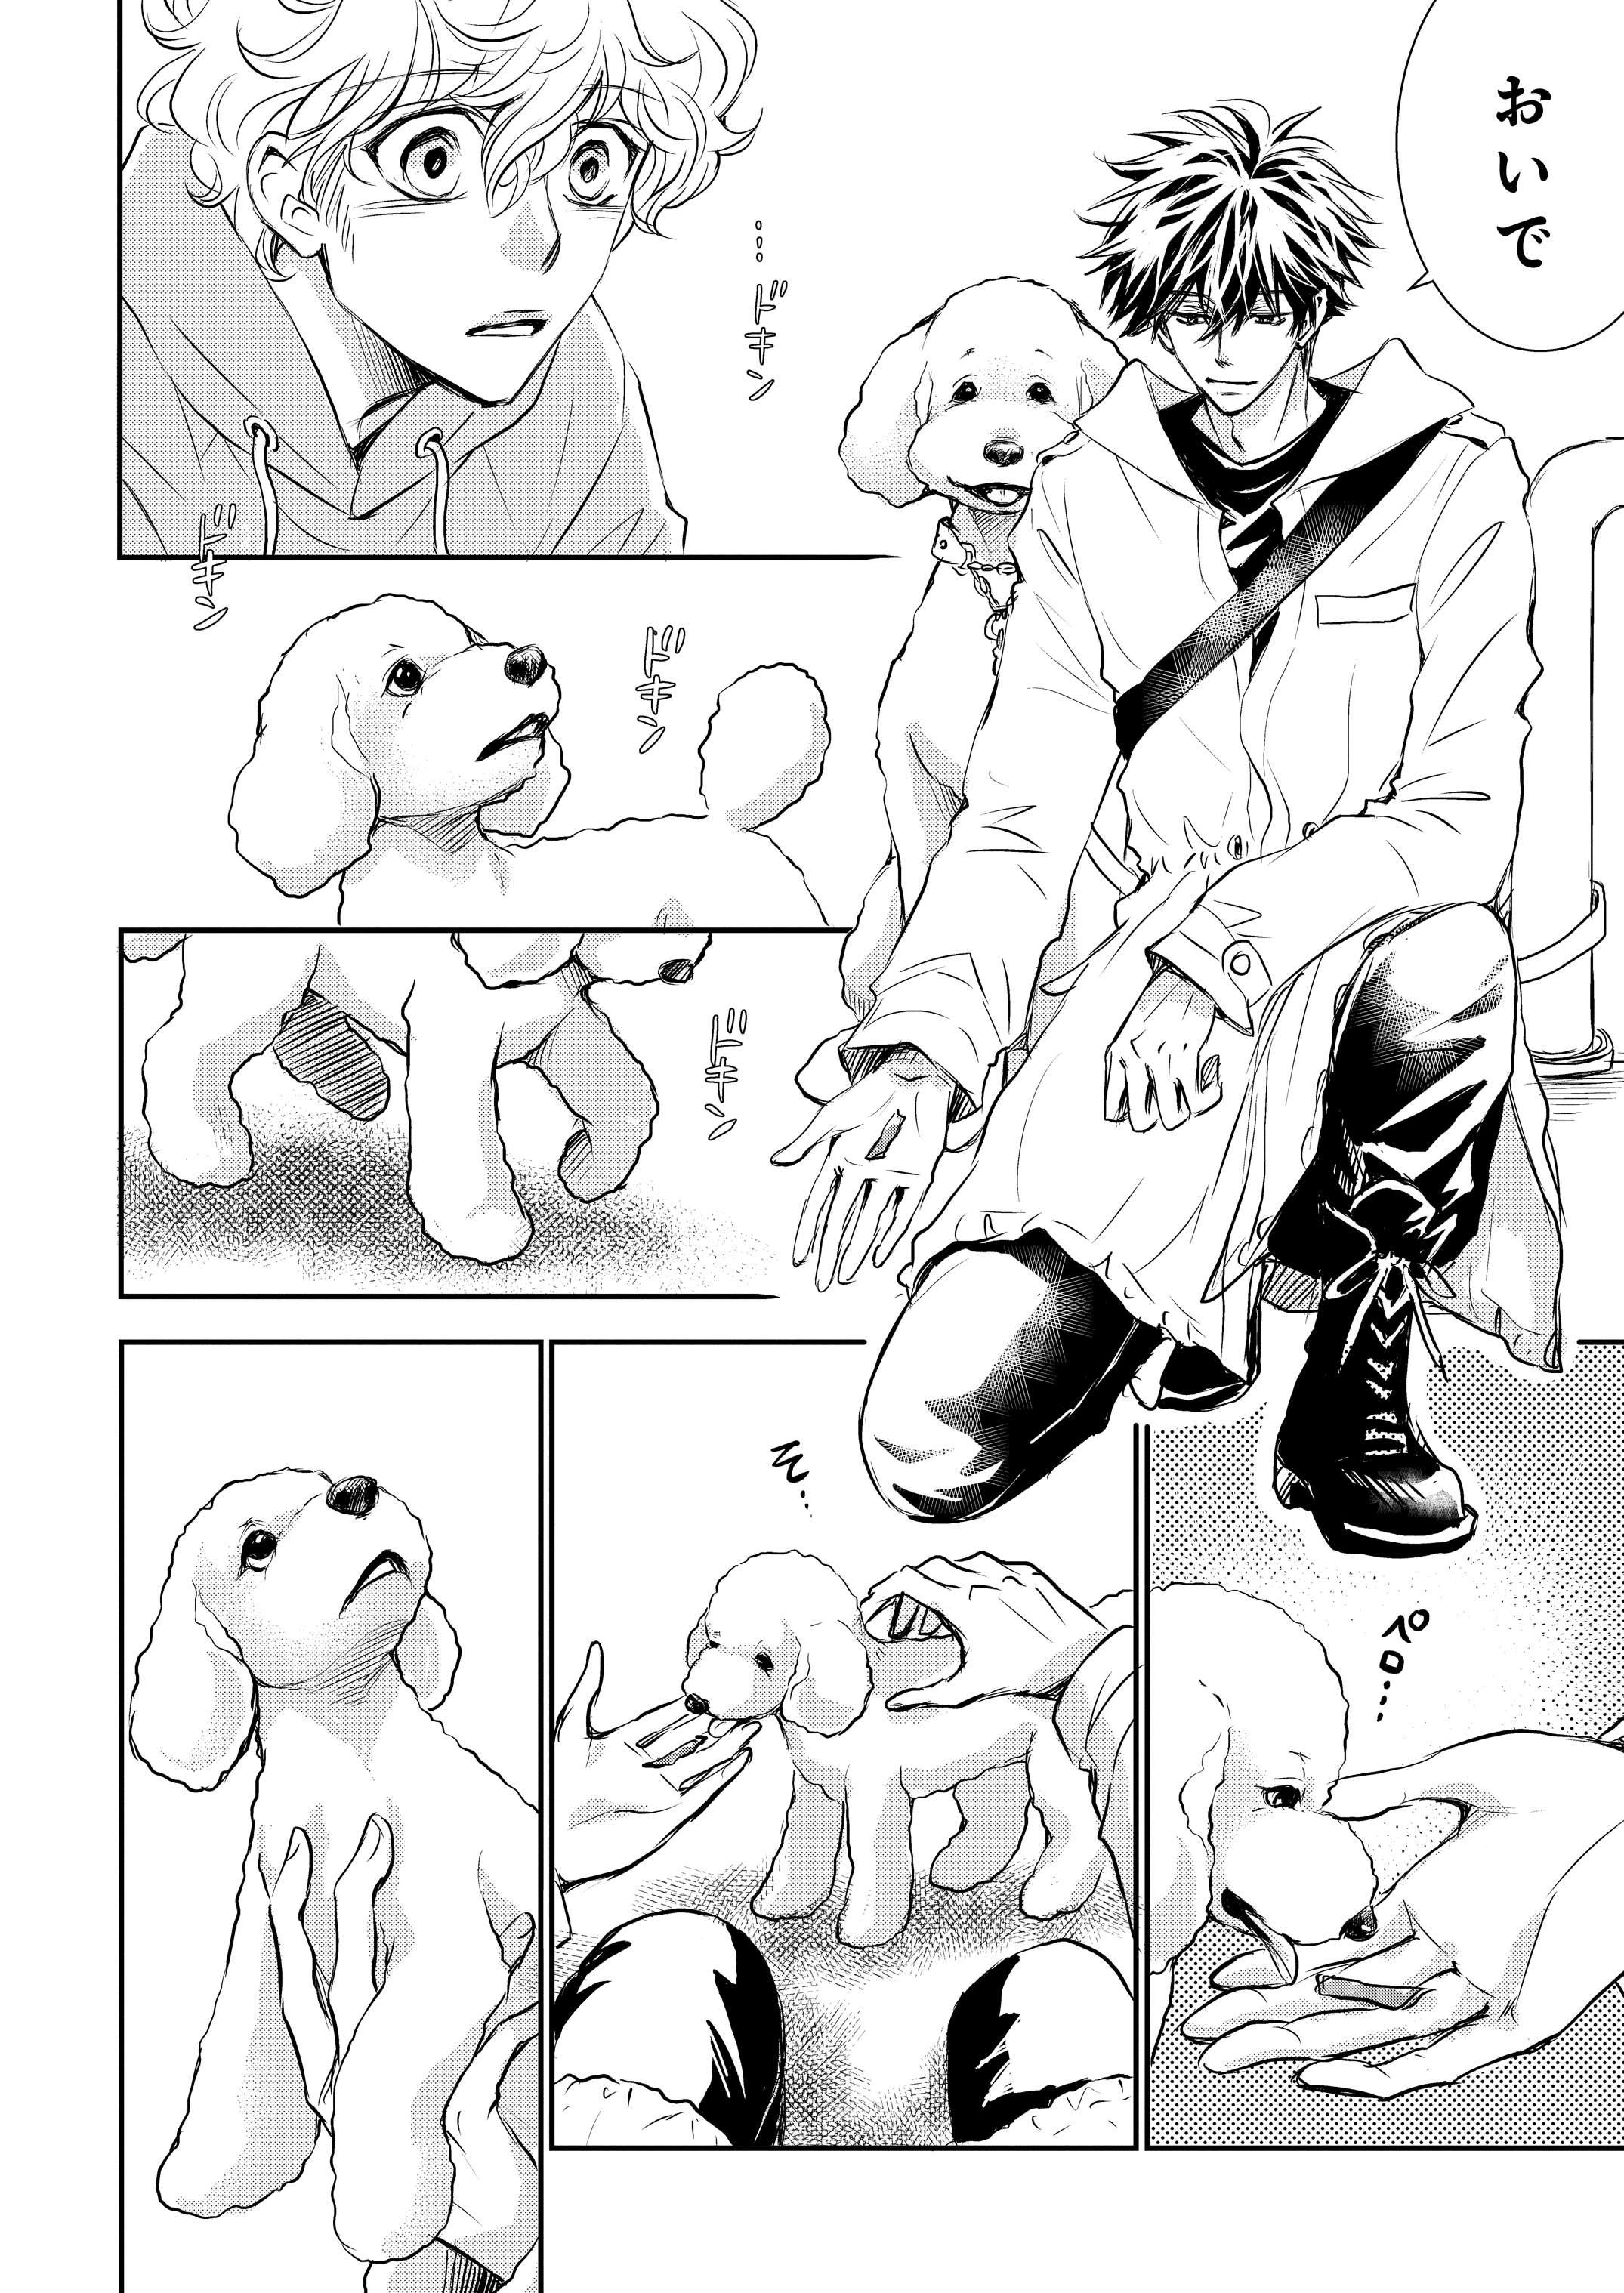 連載】漫画『DOG SIGNAL（ドッグシグナル）』1話目 2/4|ワンクォール